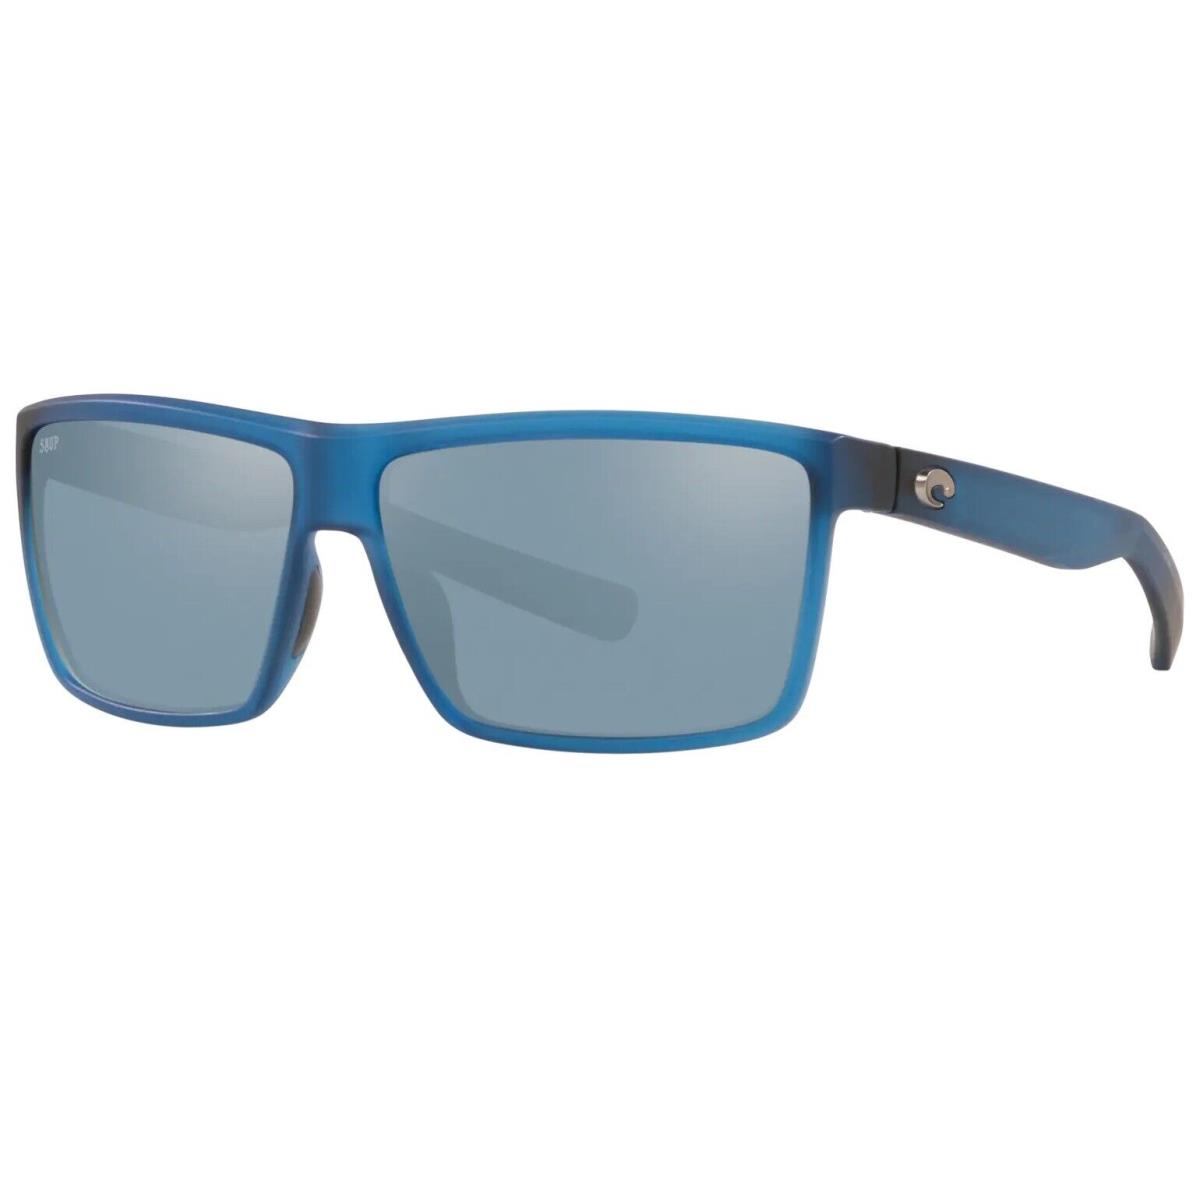 Costa Rinconcito Sunglasses - Polarized - Matte Atlantic Blue W/gray Silver